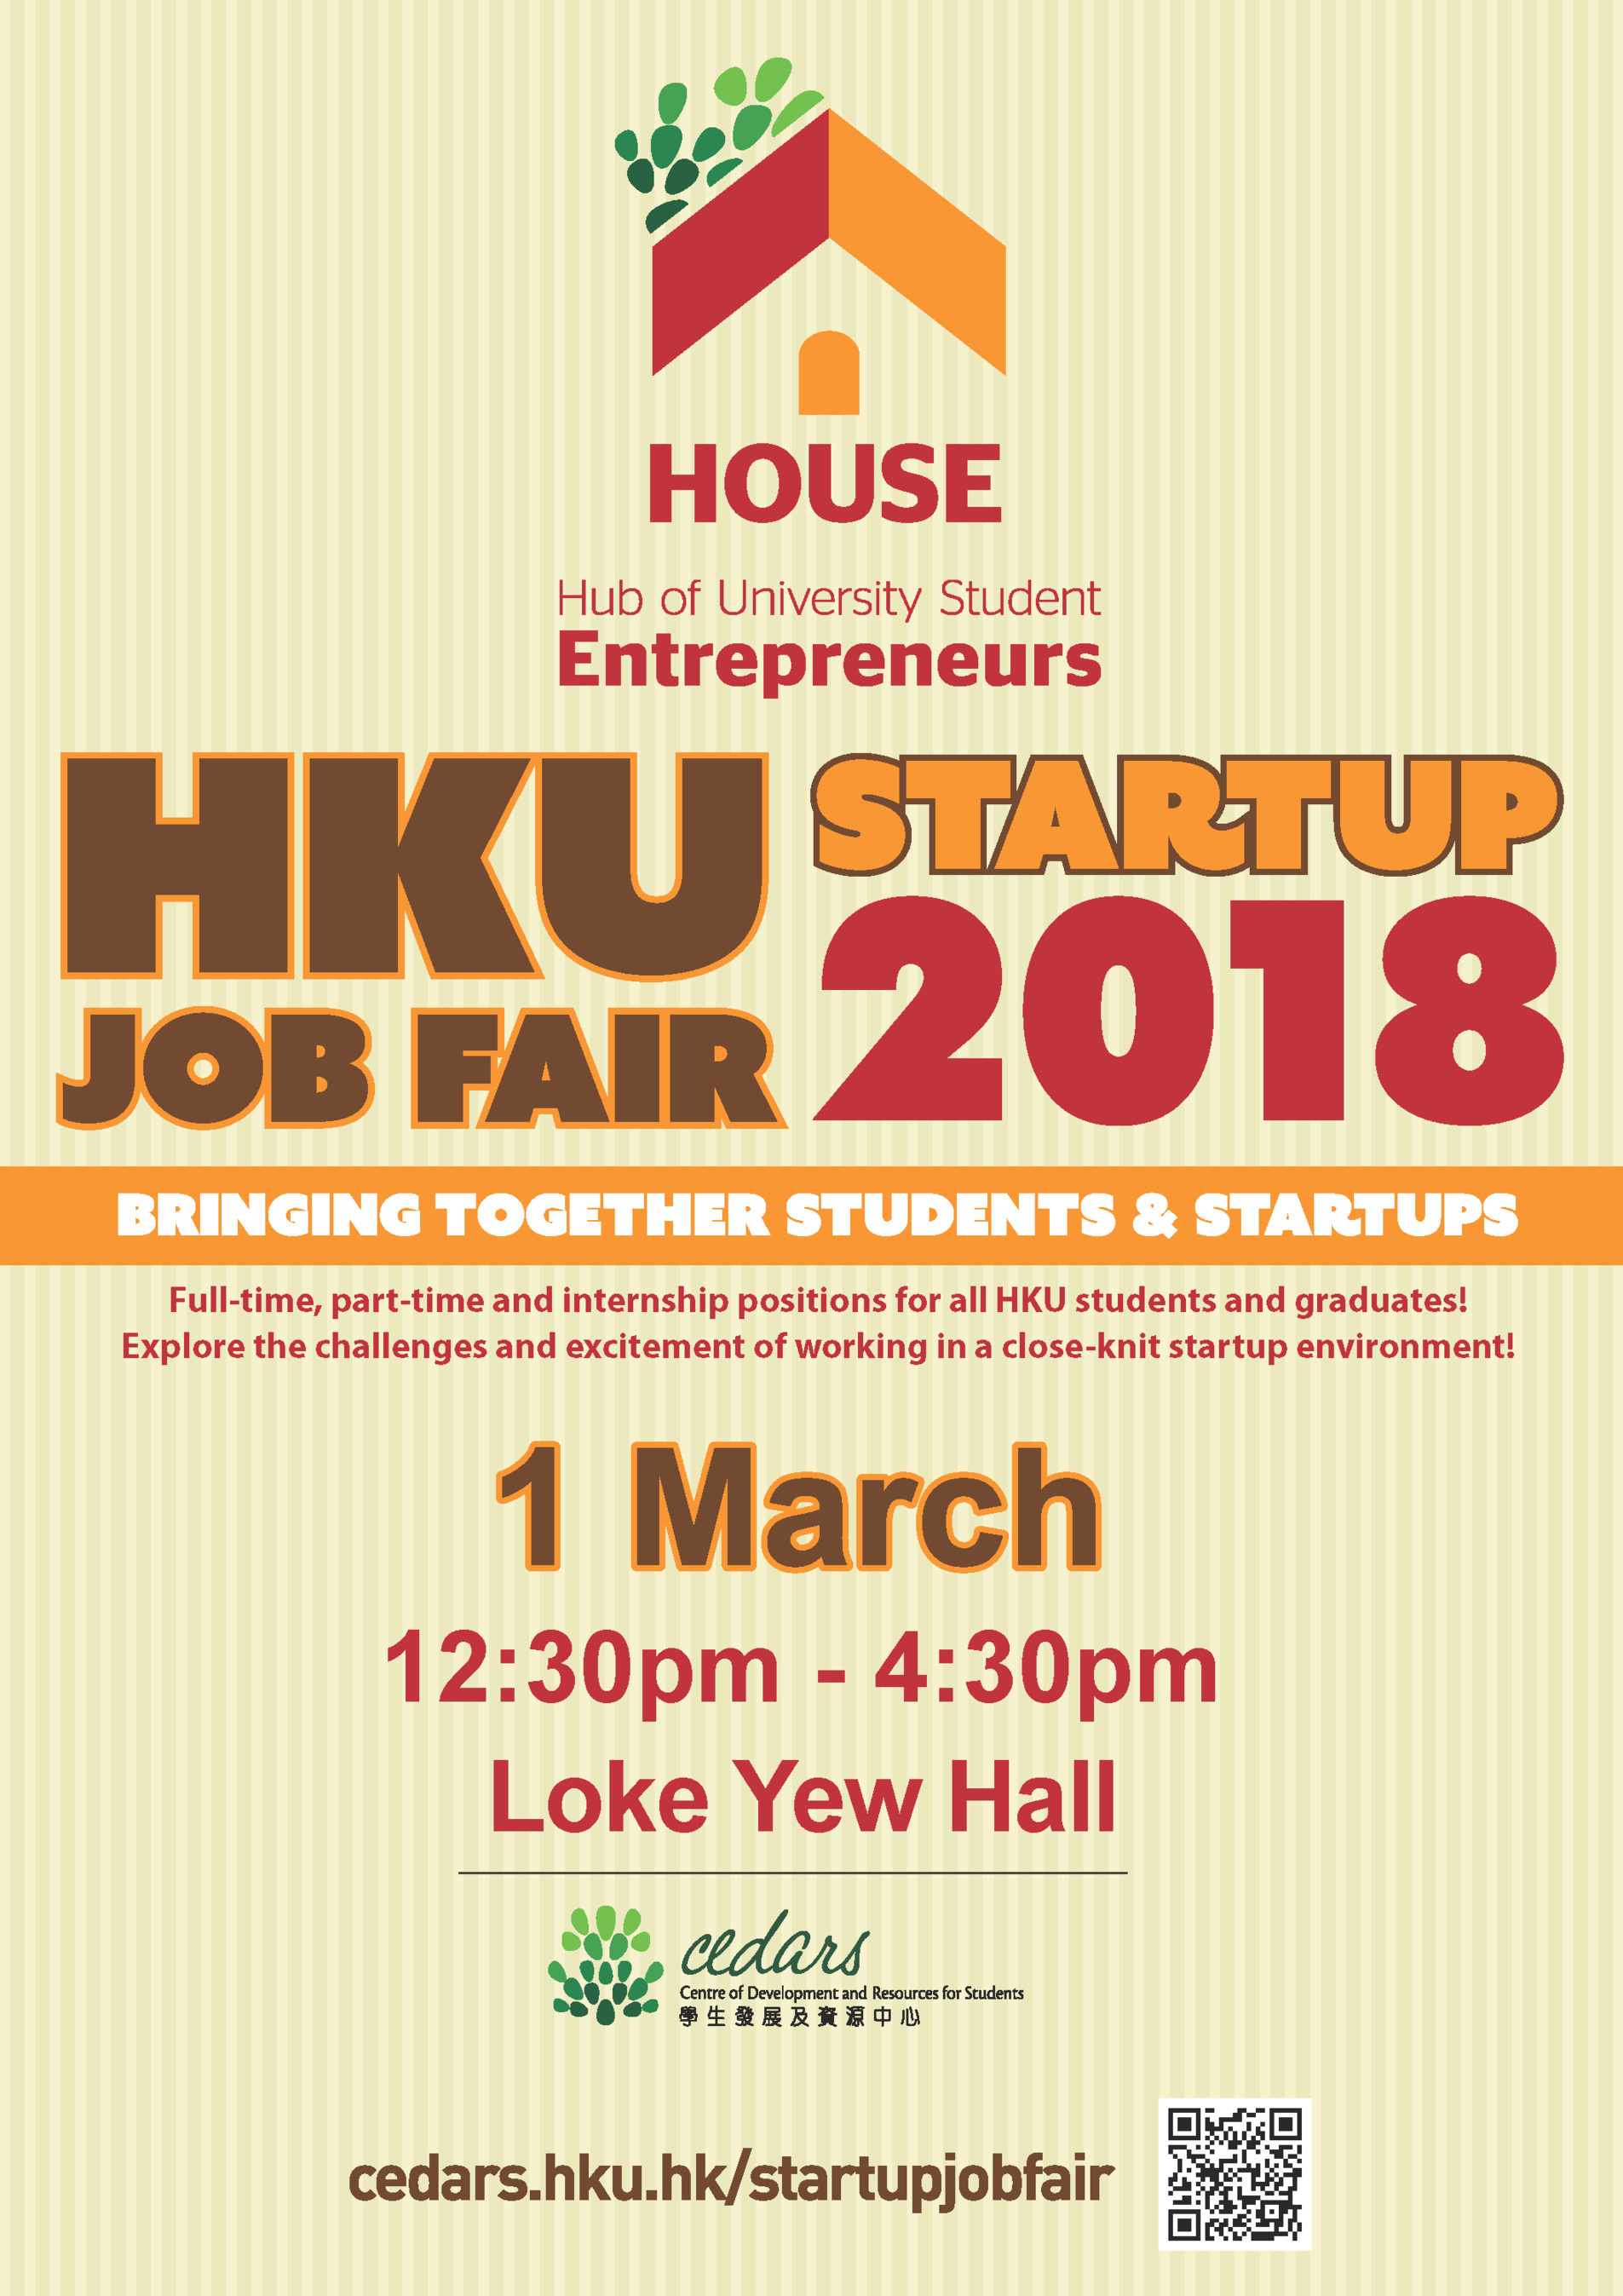 HKU Startup Job Fair 2018